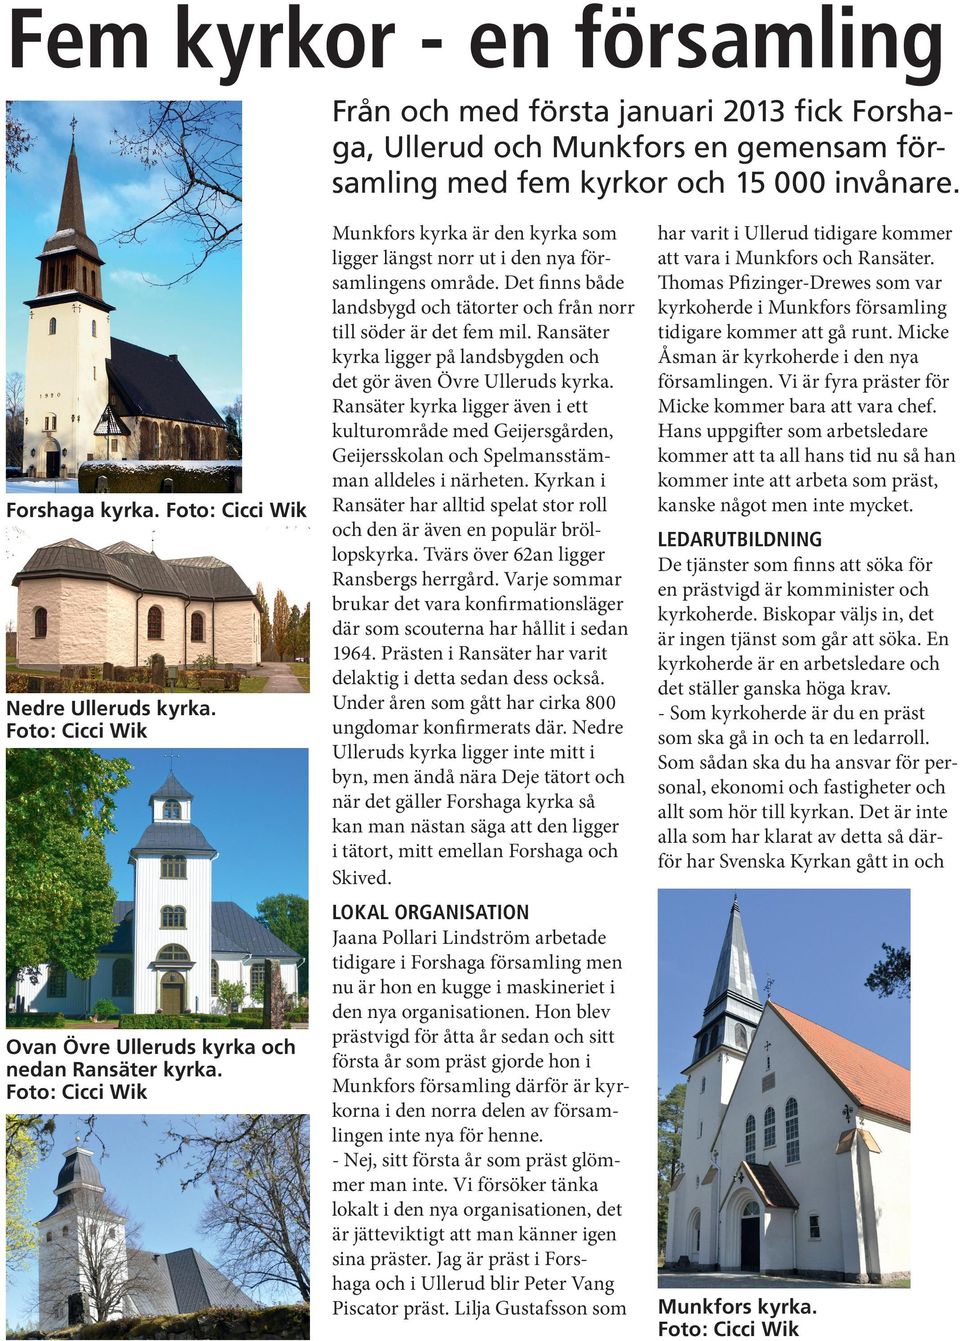 Det finns både landsbygd och tätorter och från norr till söder är det fem mil. Ransäter kyrka ligger på landsbygden och det gör även Övre Ulleruds kyrka.